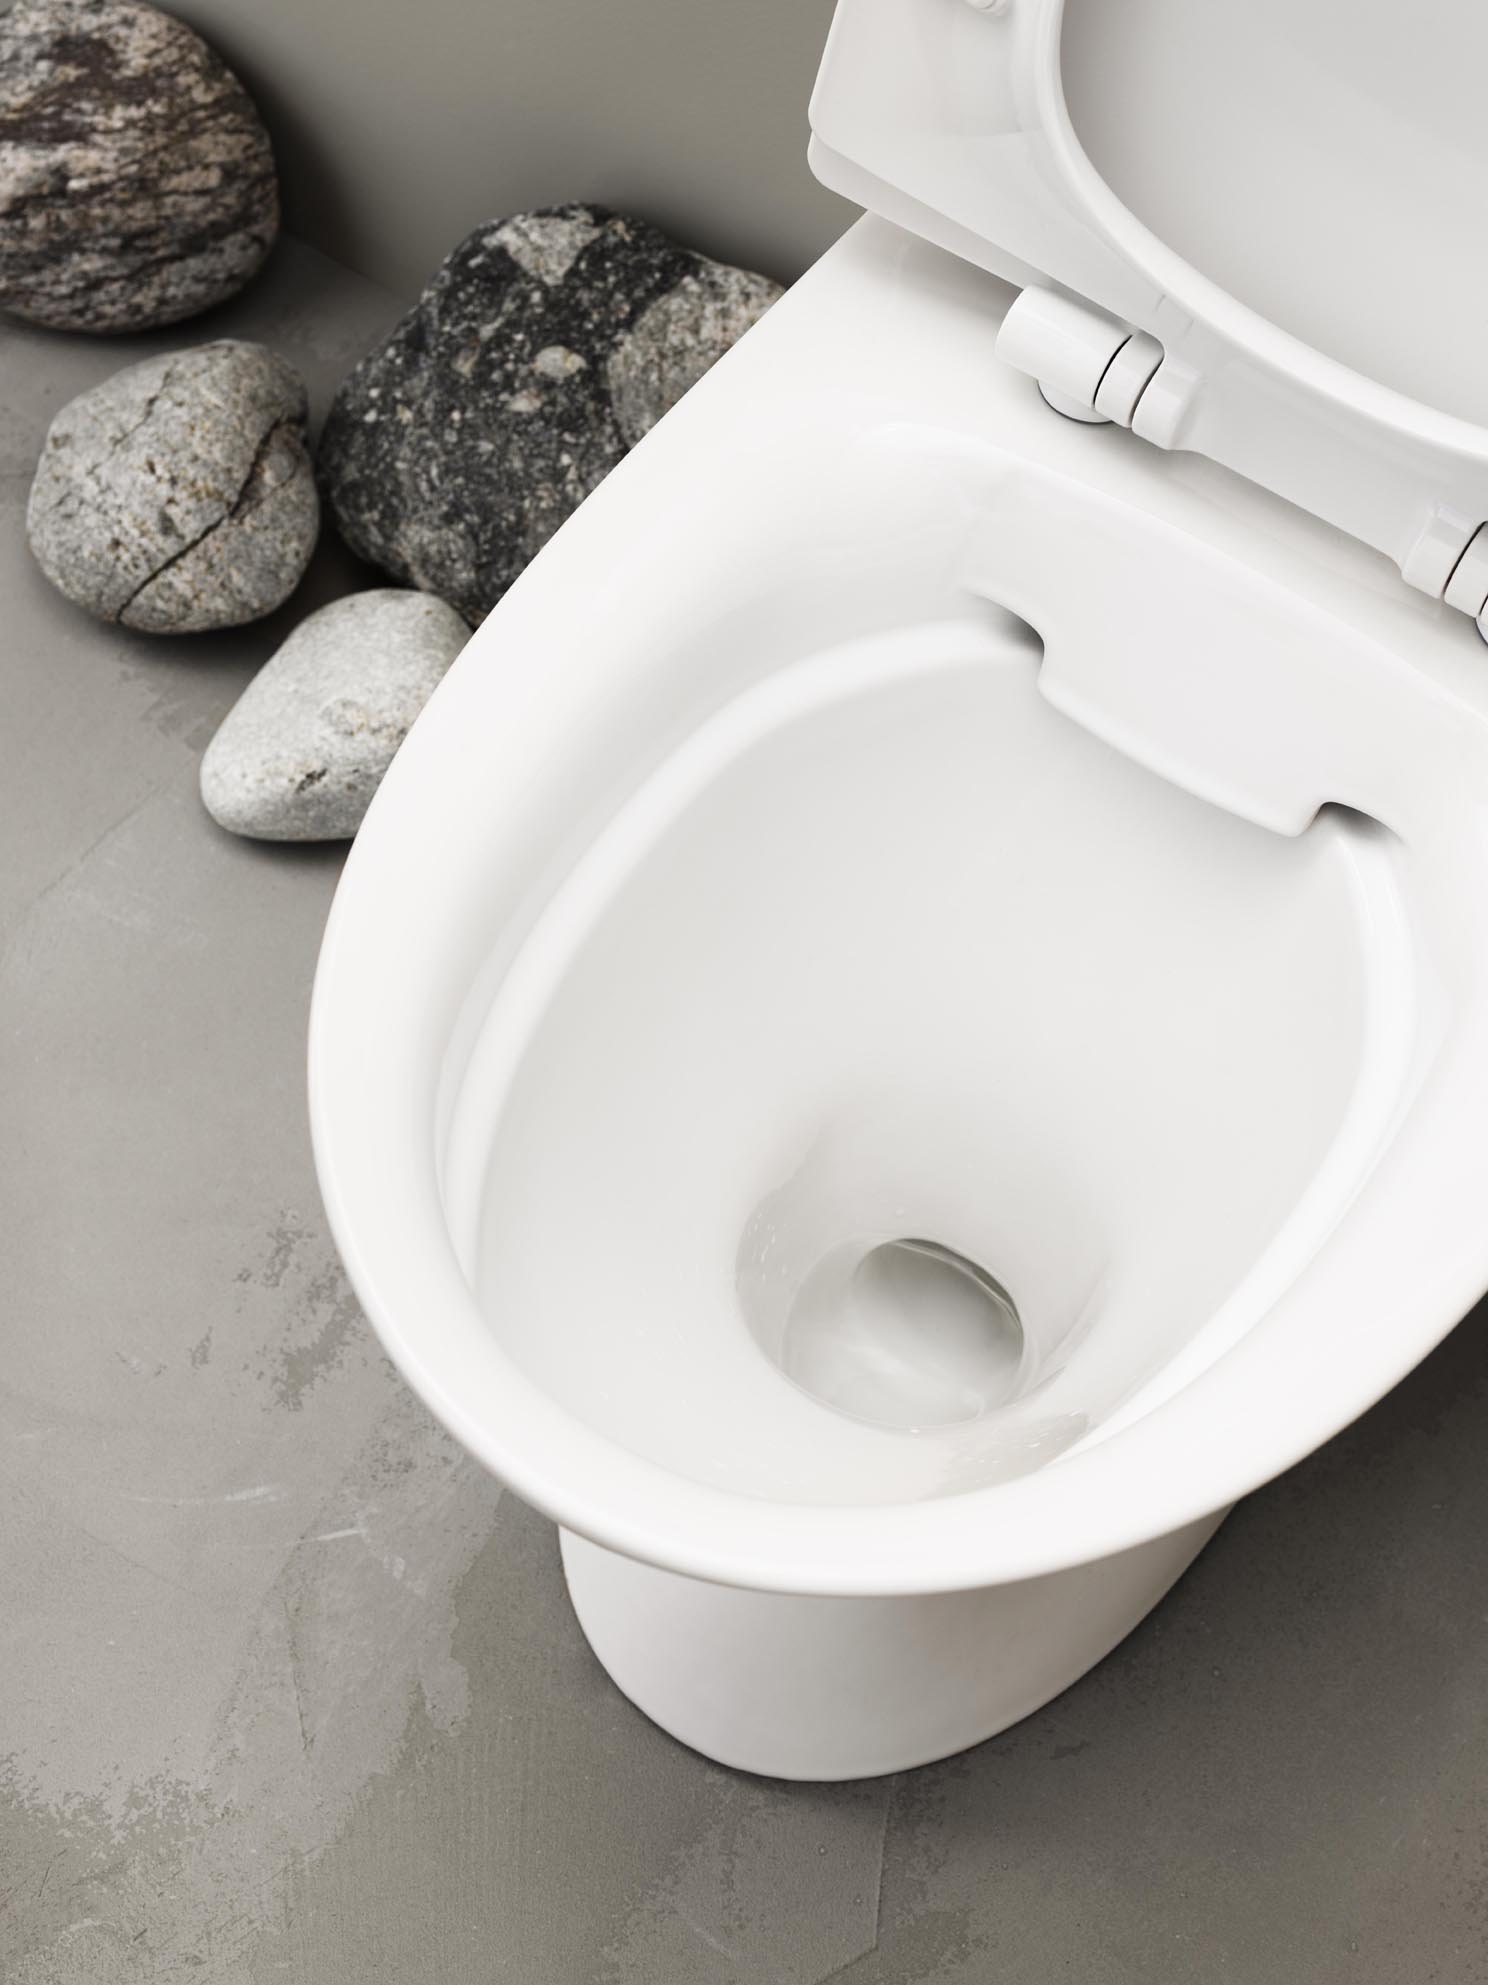 IFÖø s toiletter har en speciel glasur der er let at rengøre, den kalder de Ifö clean.